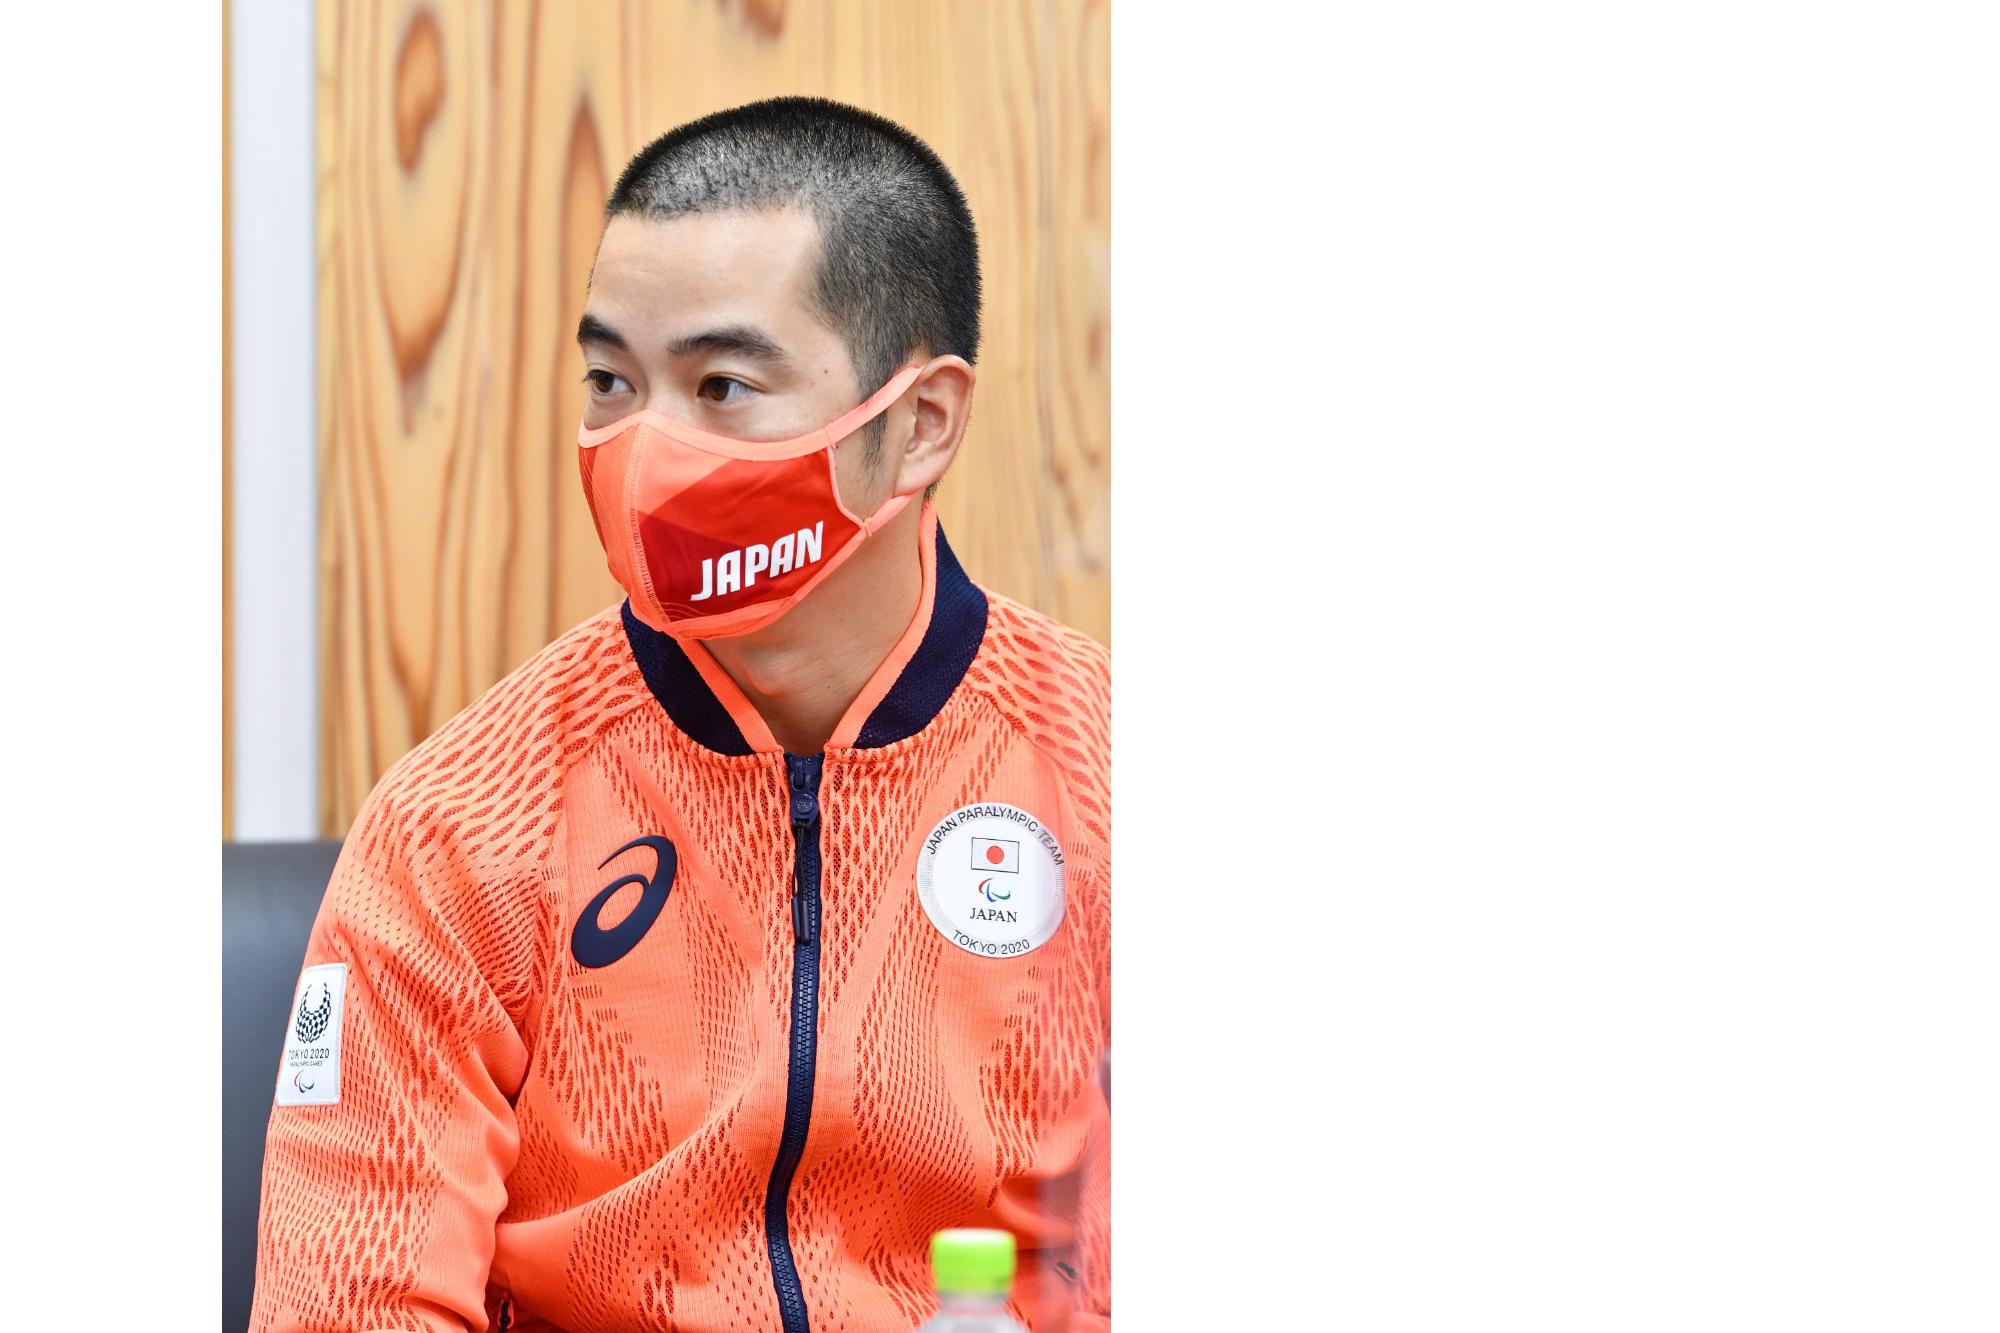 東京2020パラリンピックに出場した高嶋活士選手が、市役所に表敬訪問してくださった際の写真